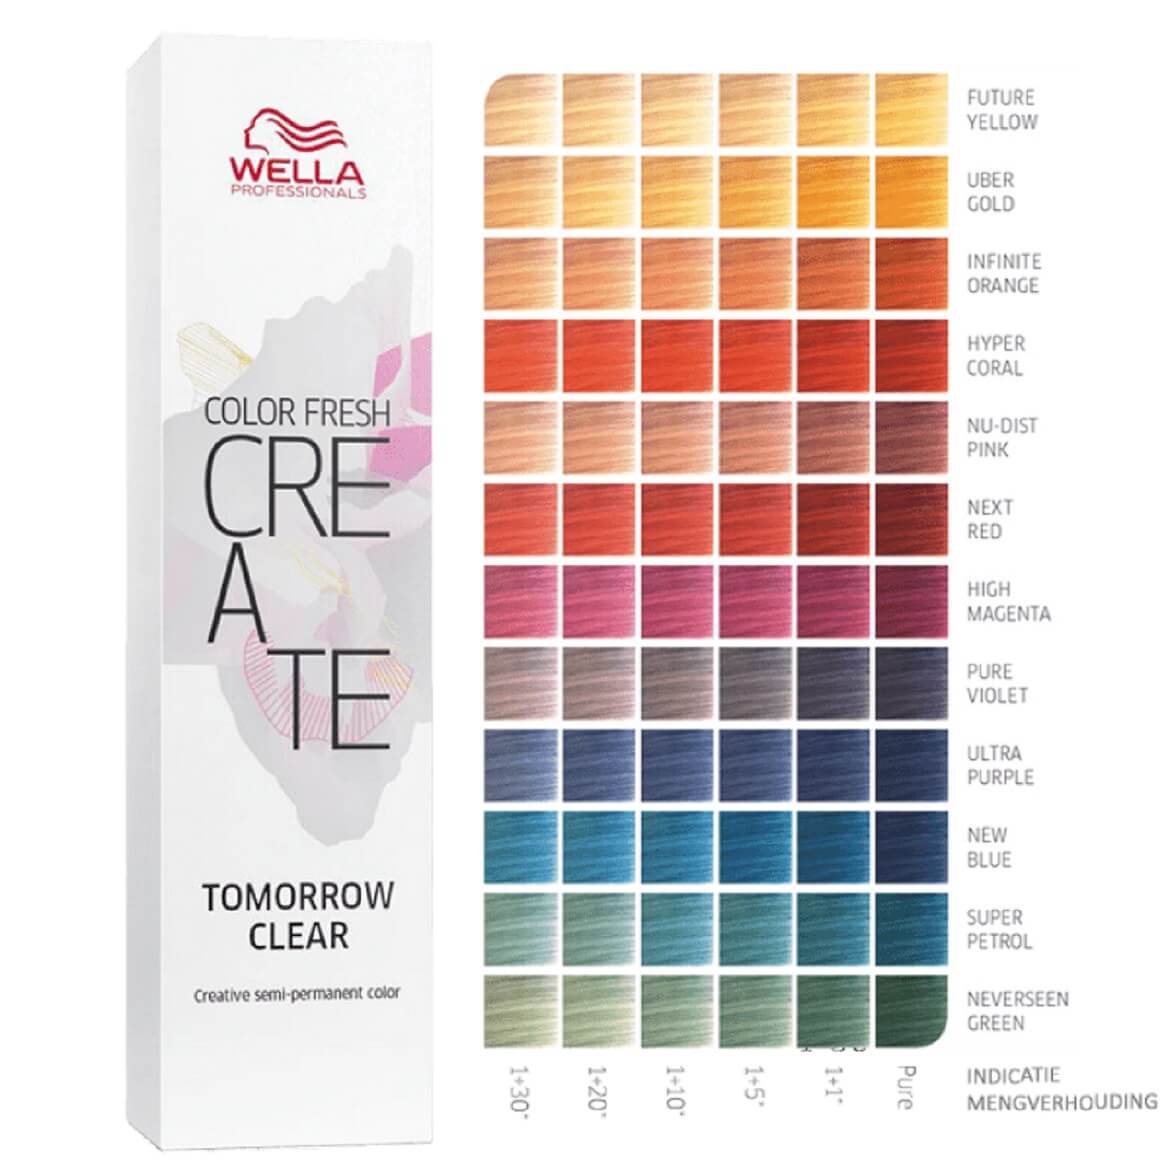 Farba Wella Color Fresh Create semi